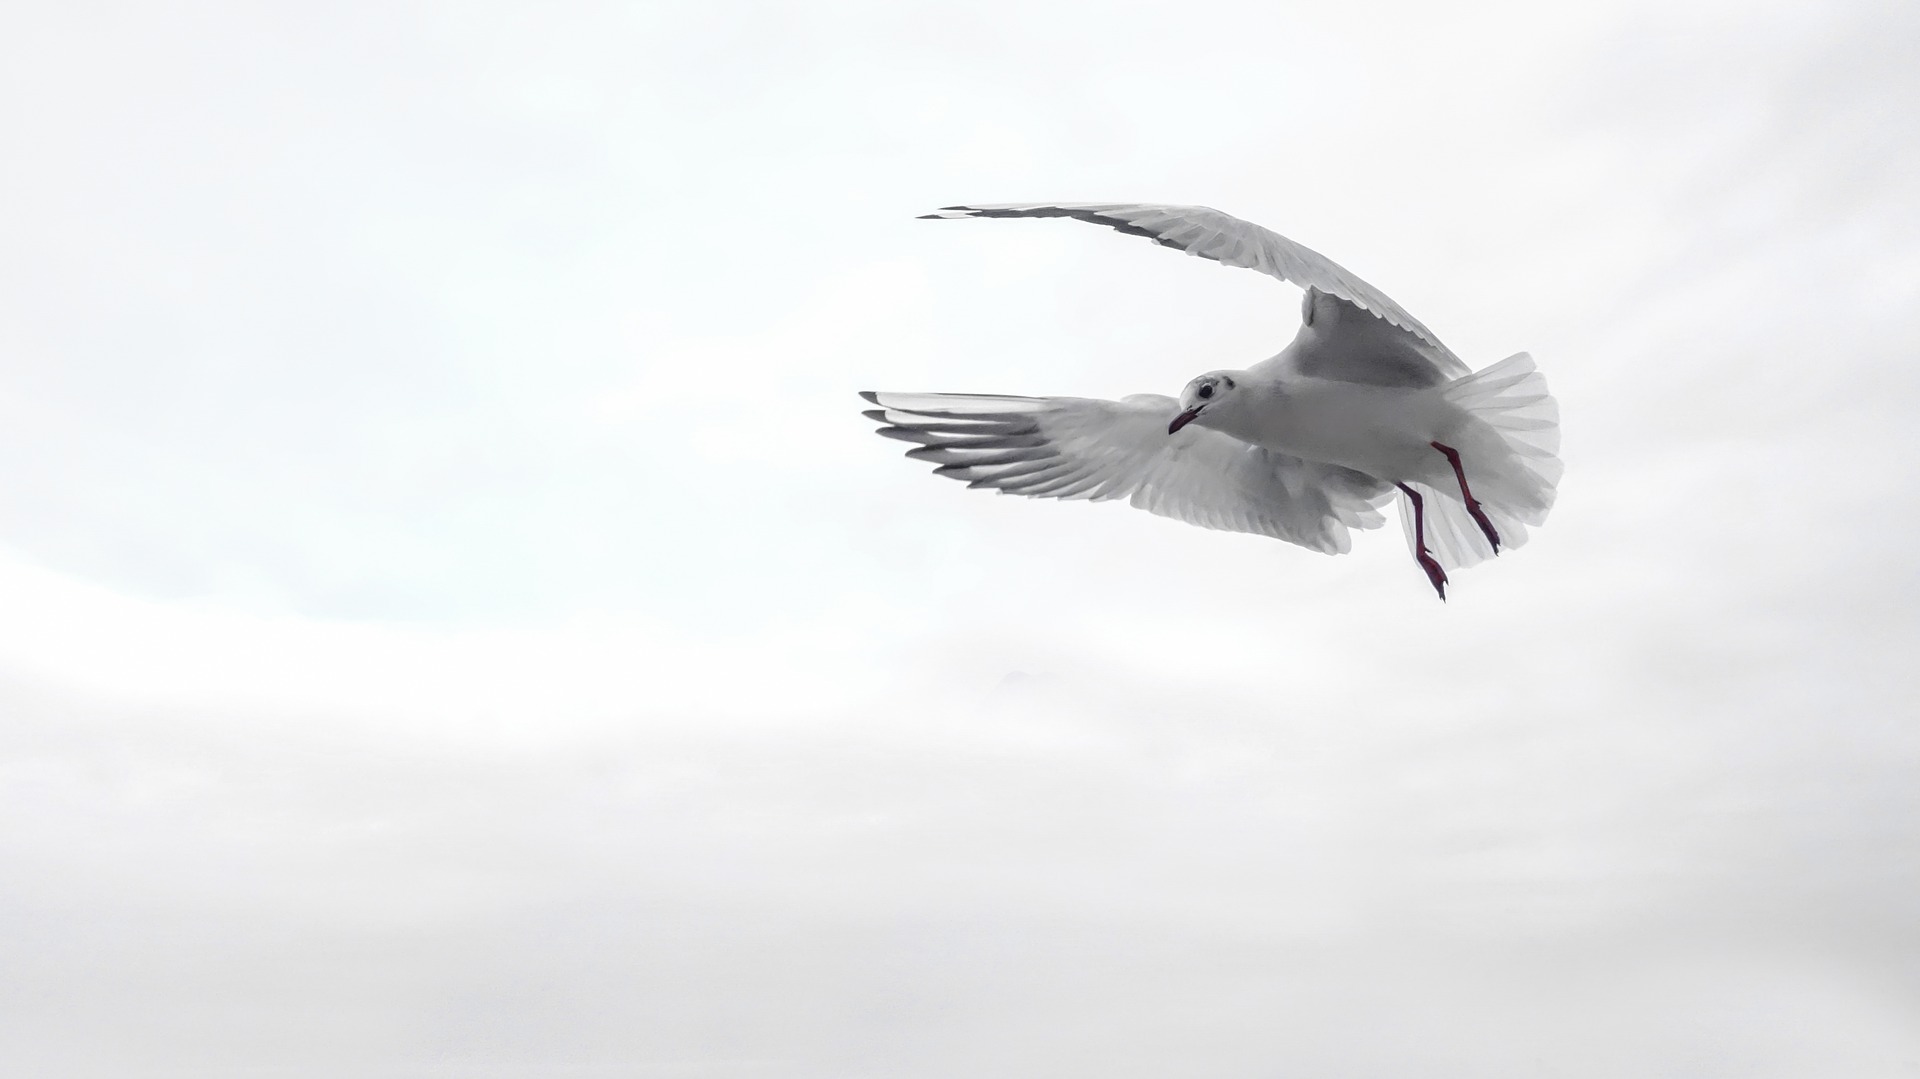 A bird flying in freedom